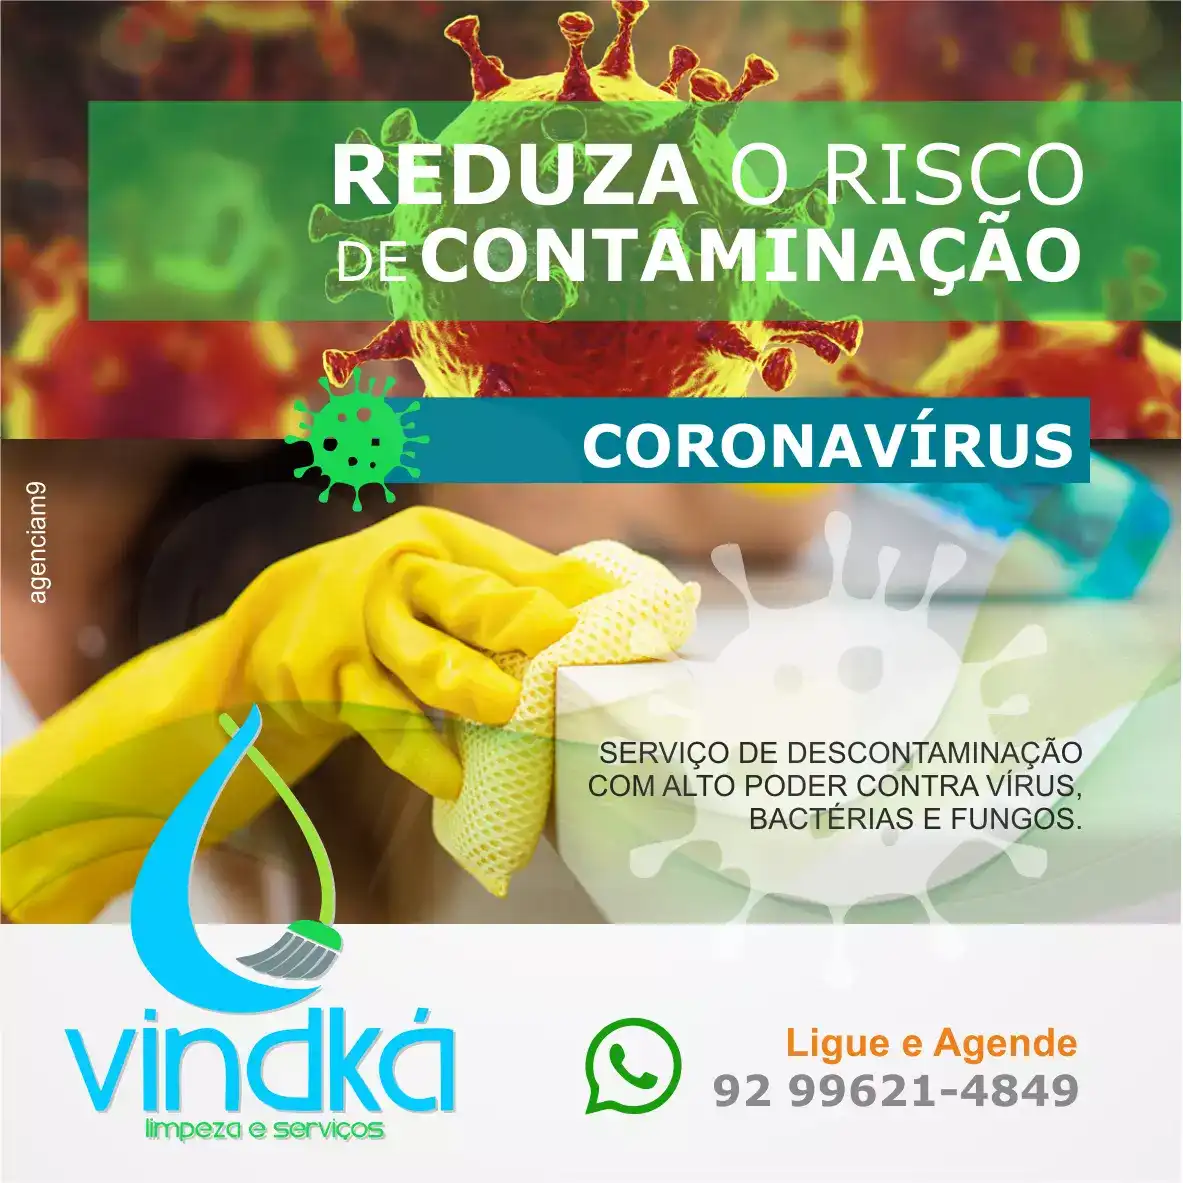 
Propaganda Descontaminação de Vírus na Empresa Serviço de Limpeza



